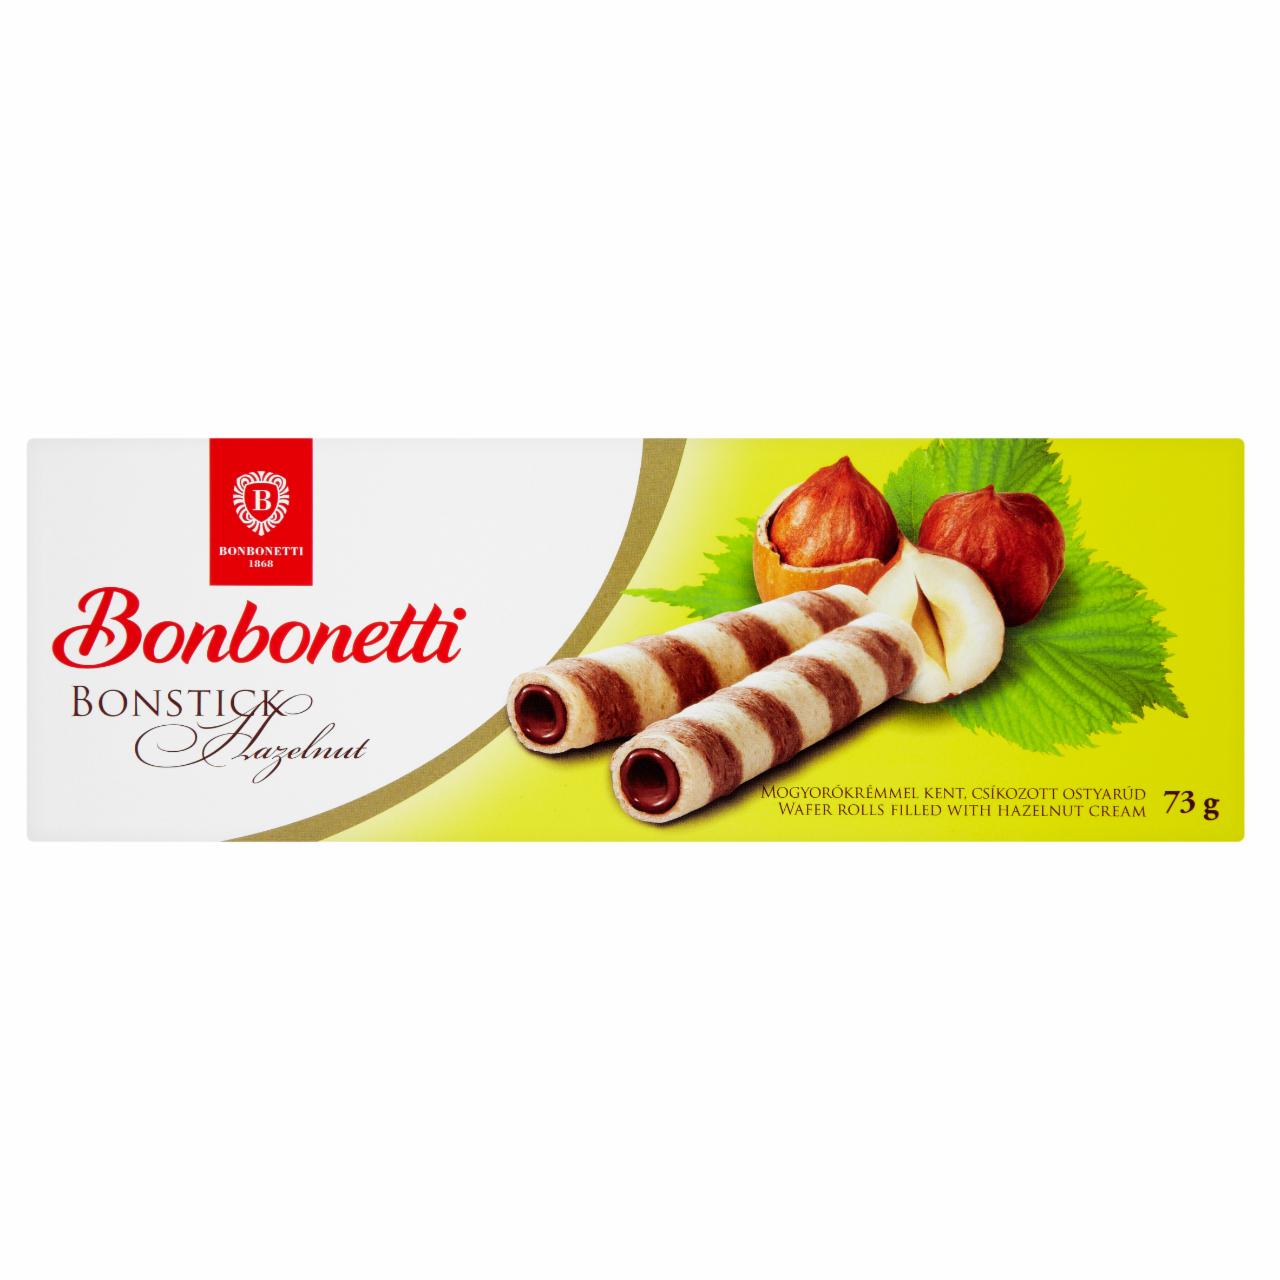 Képek - Bonbonetti Bonstick mogyorókrémmel kent csíkozott ostyarúd 73 g